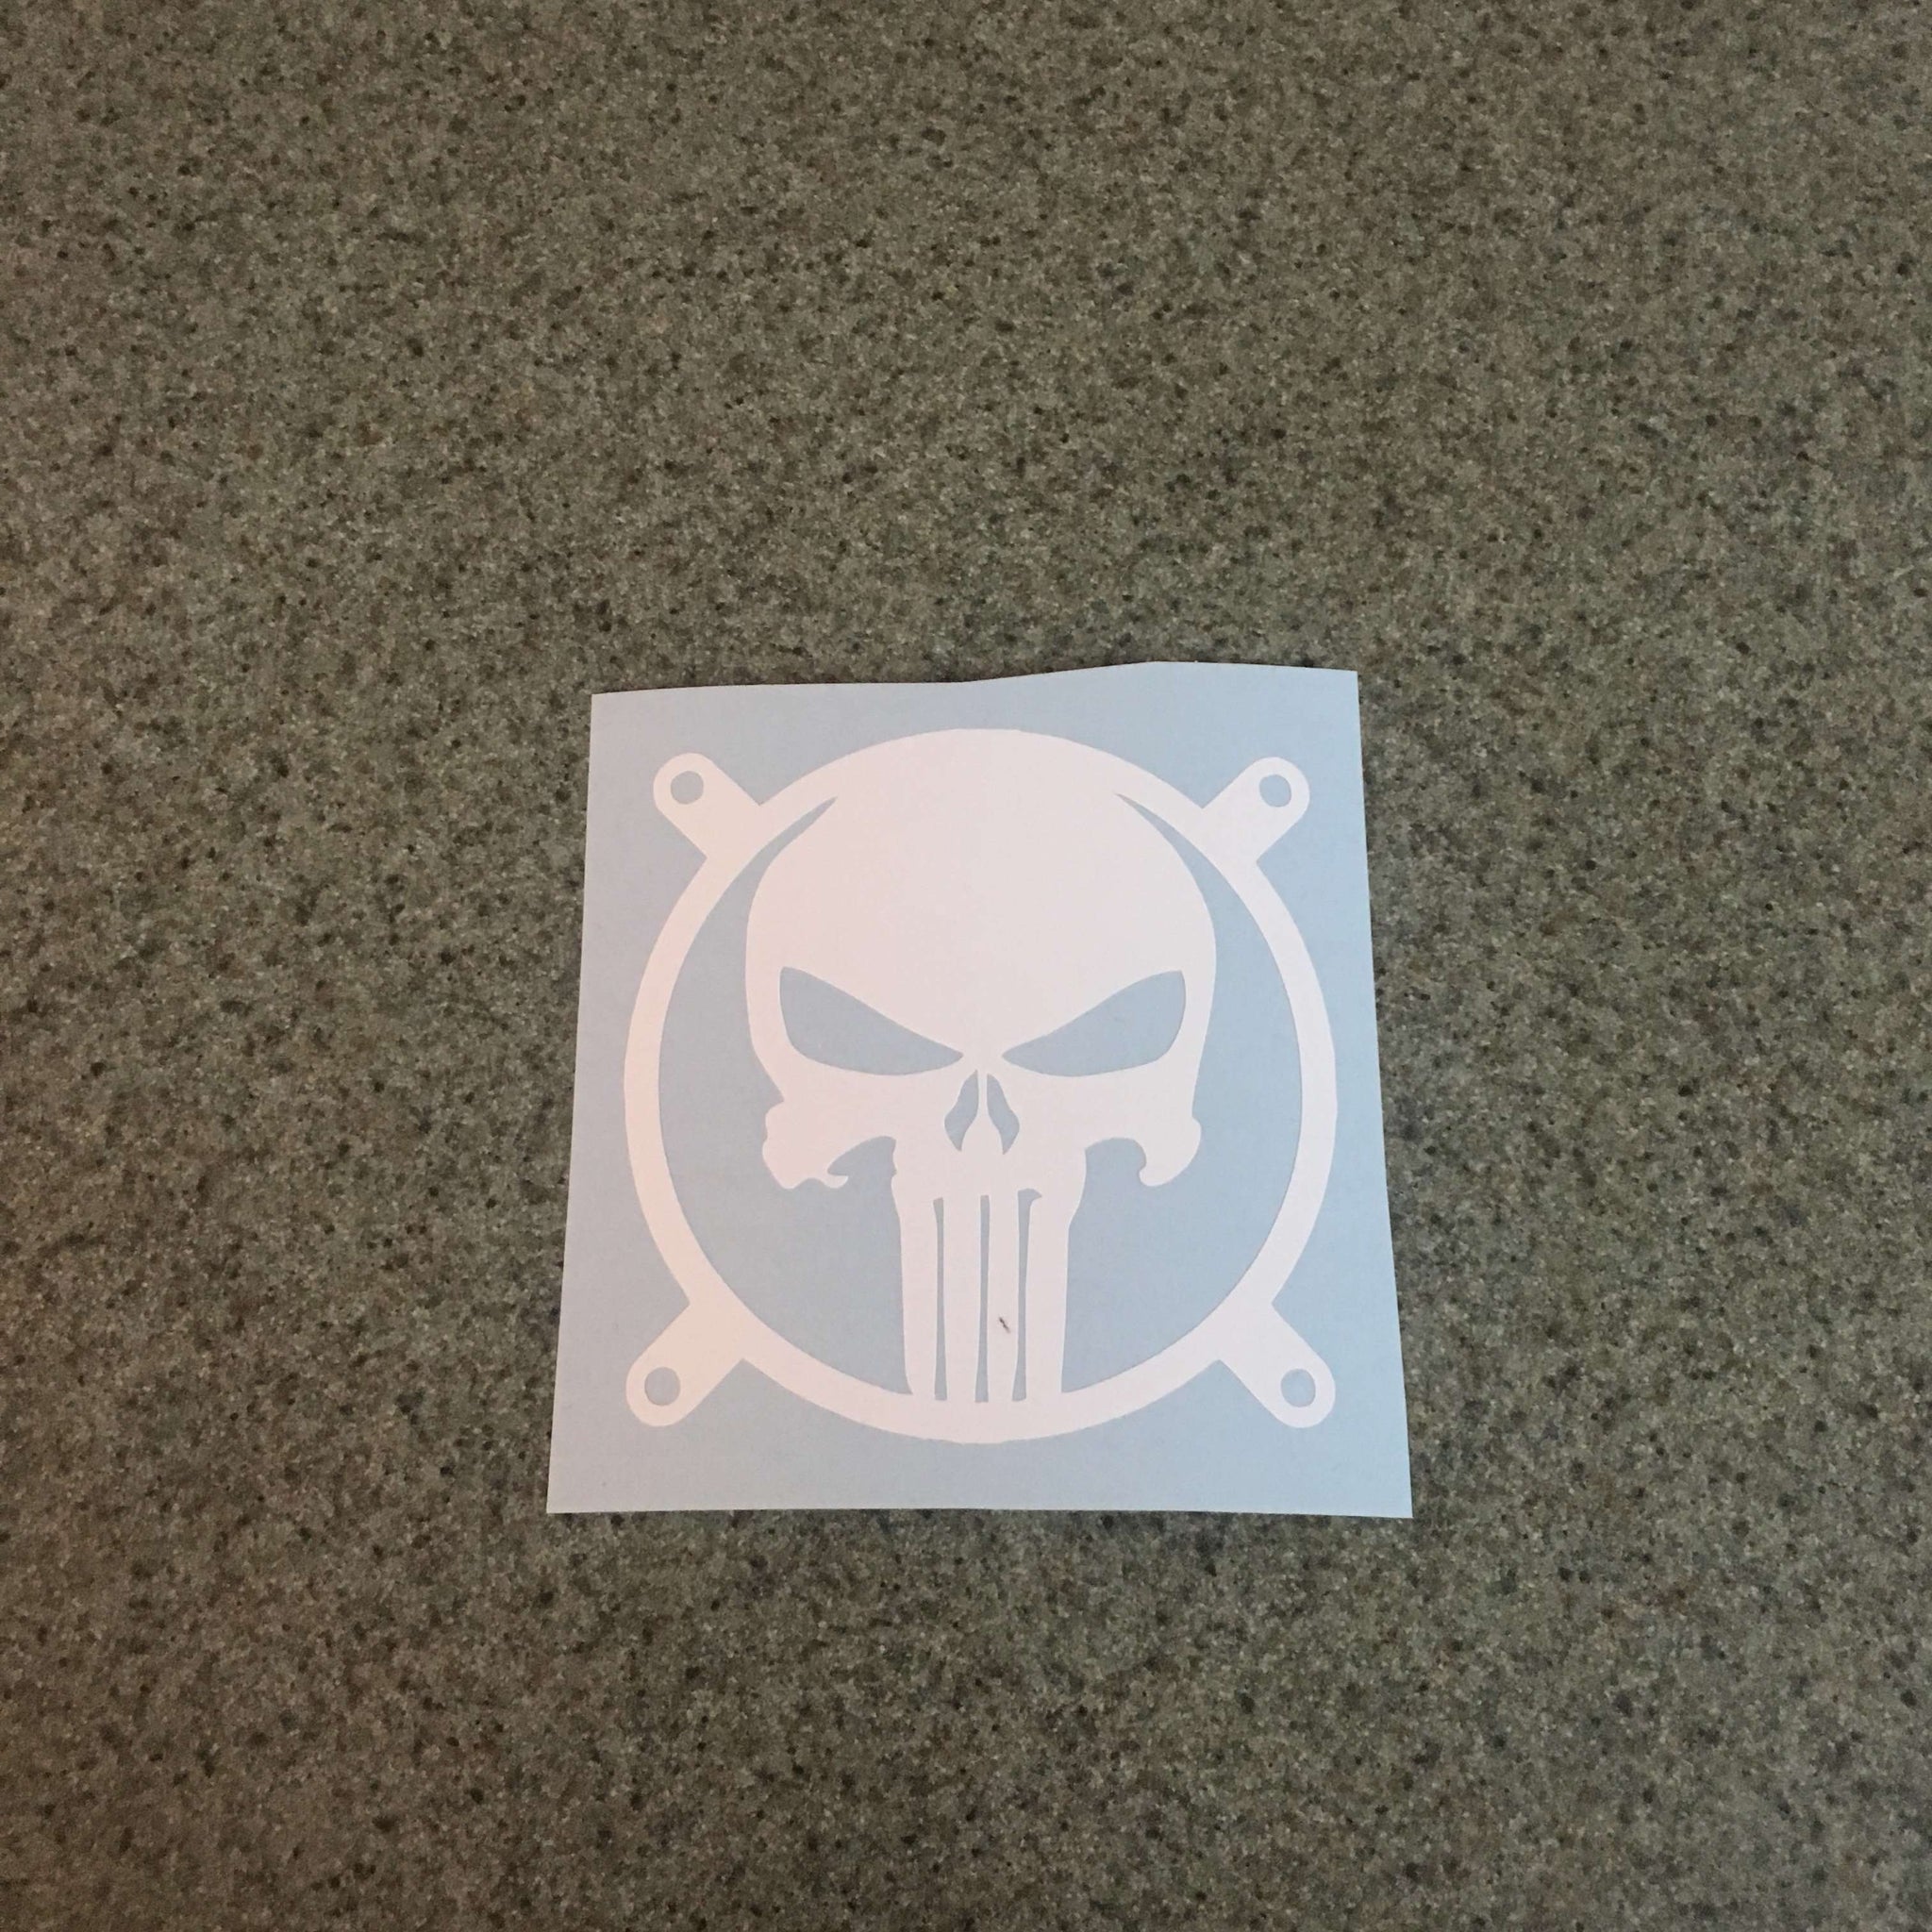 The Punisher Sticker